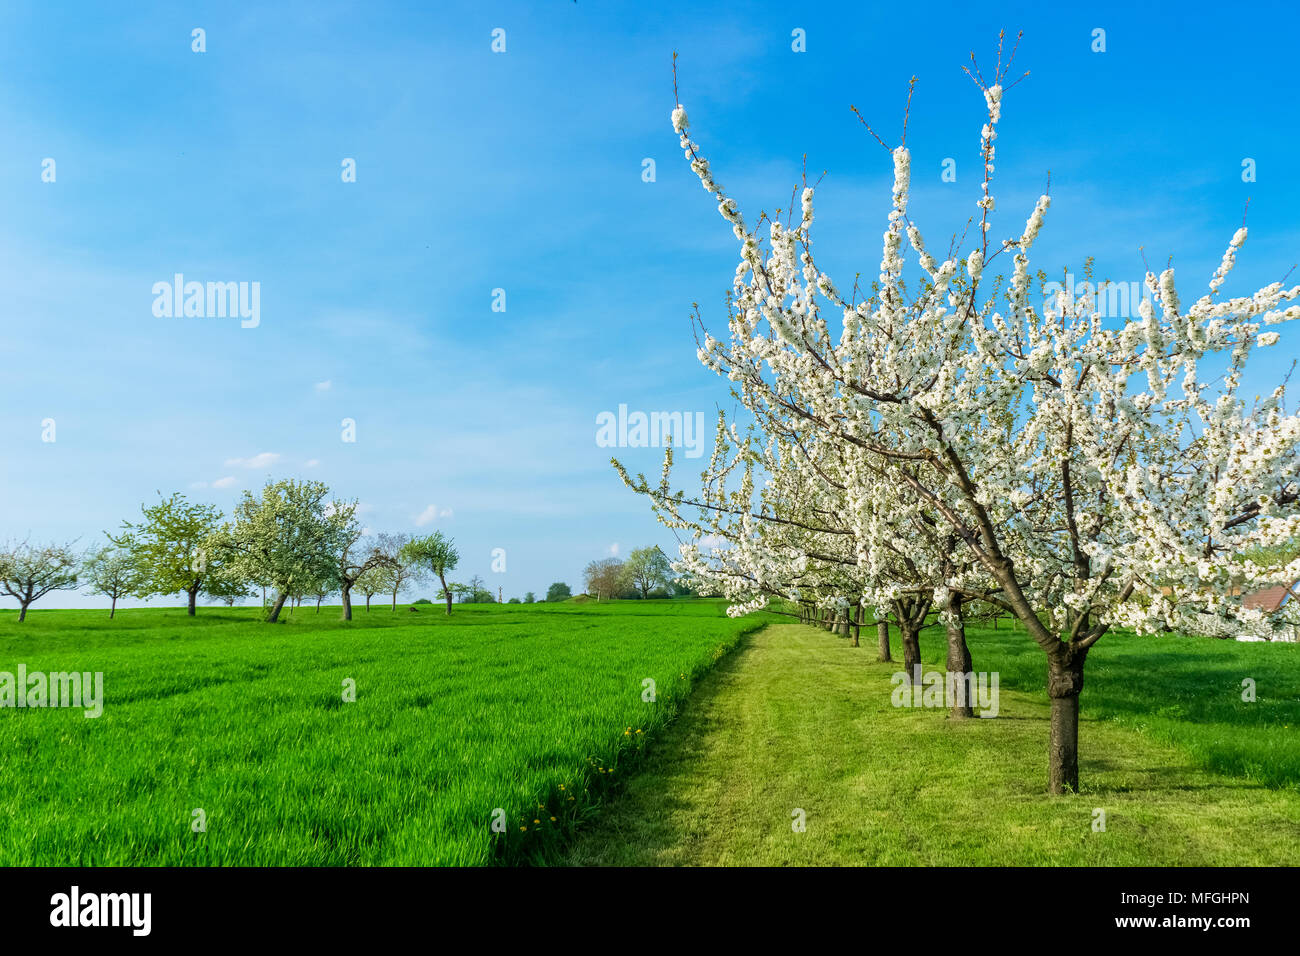 La floraison des cerisiers, prunus avium, conformément à la campagne sur une belle journée ensoleillée de début de printemps, l'espace de copie, Alsace, France. Banque D'Images